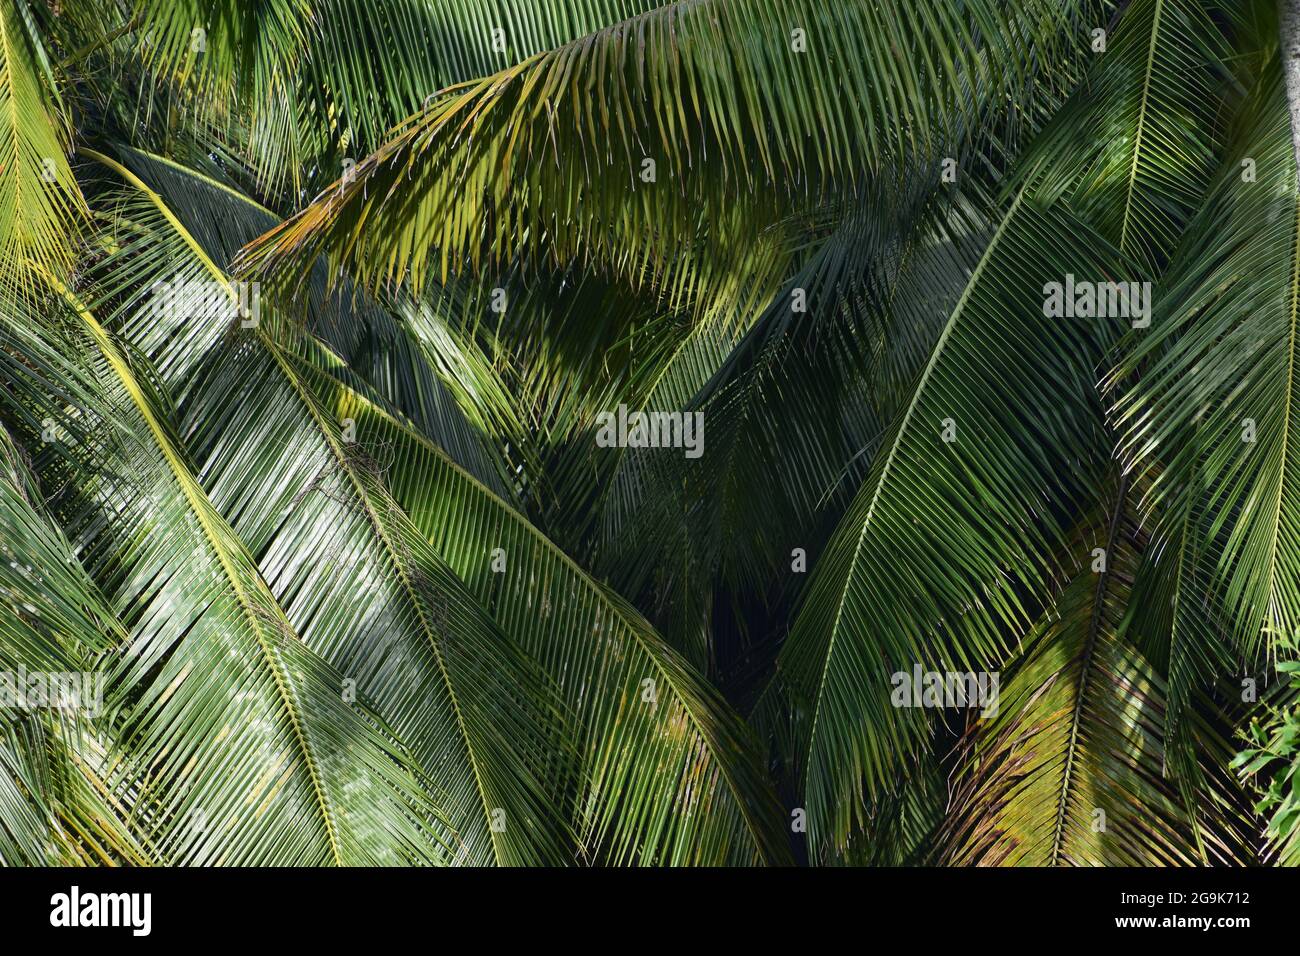 Schönes Palmenblatt-Muster im grünen Palmenwald, abstraktes Naturstruktur-Blätter-Design auf grünem Wald, Super-Natur-Aufnahme von Palmenblättern Stockfoto